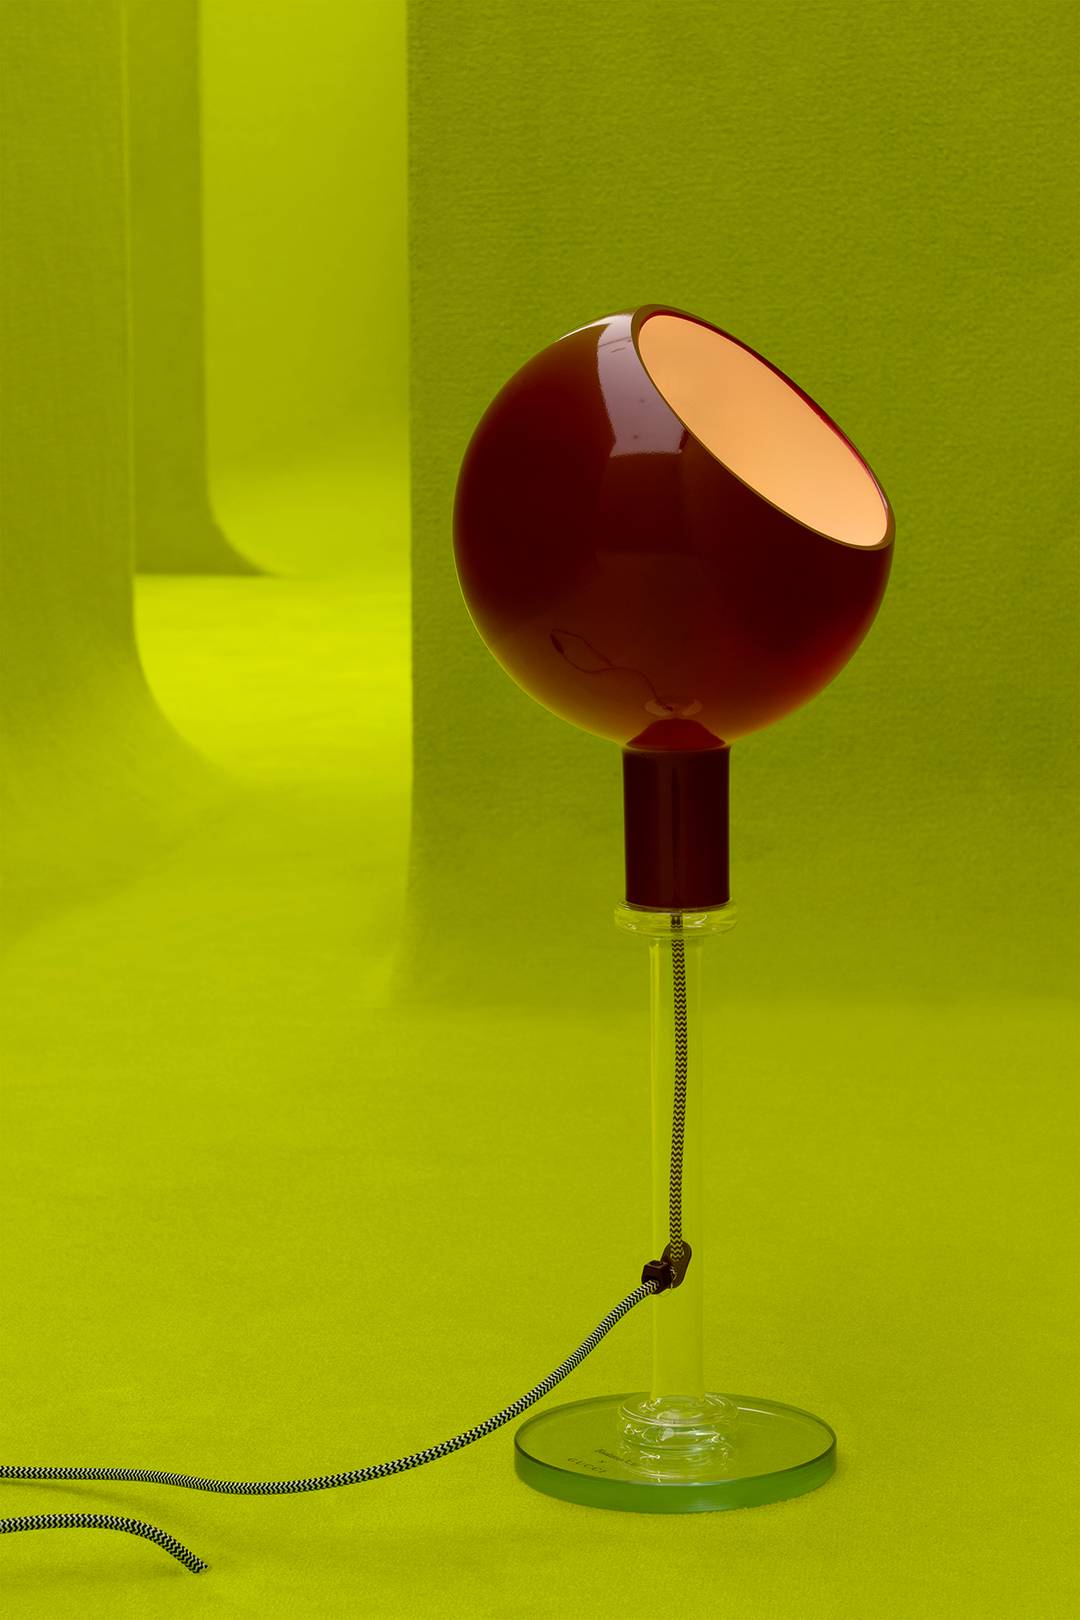 The 1980’s Parola table lamp, designed by Gae Aulenti and Piero Castiglioni.